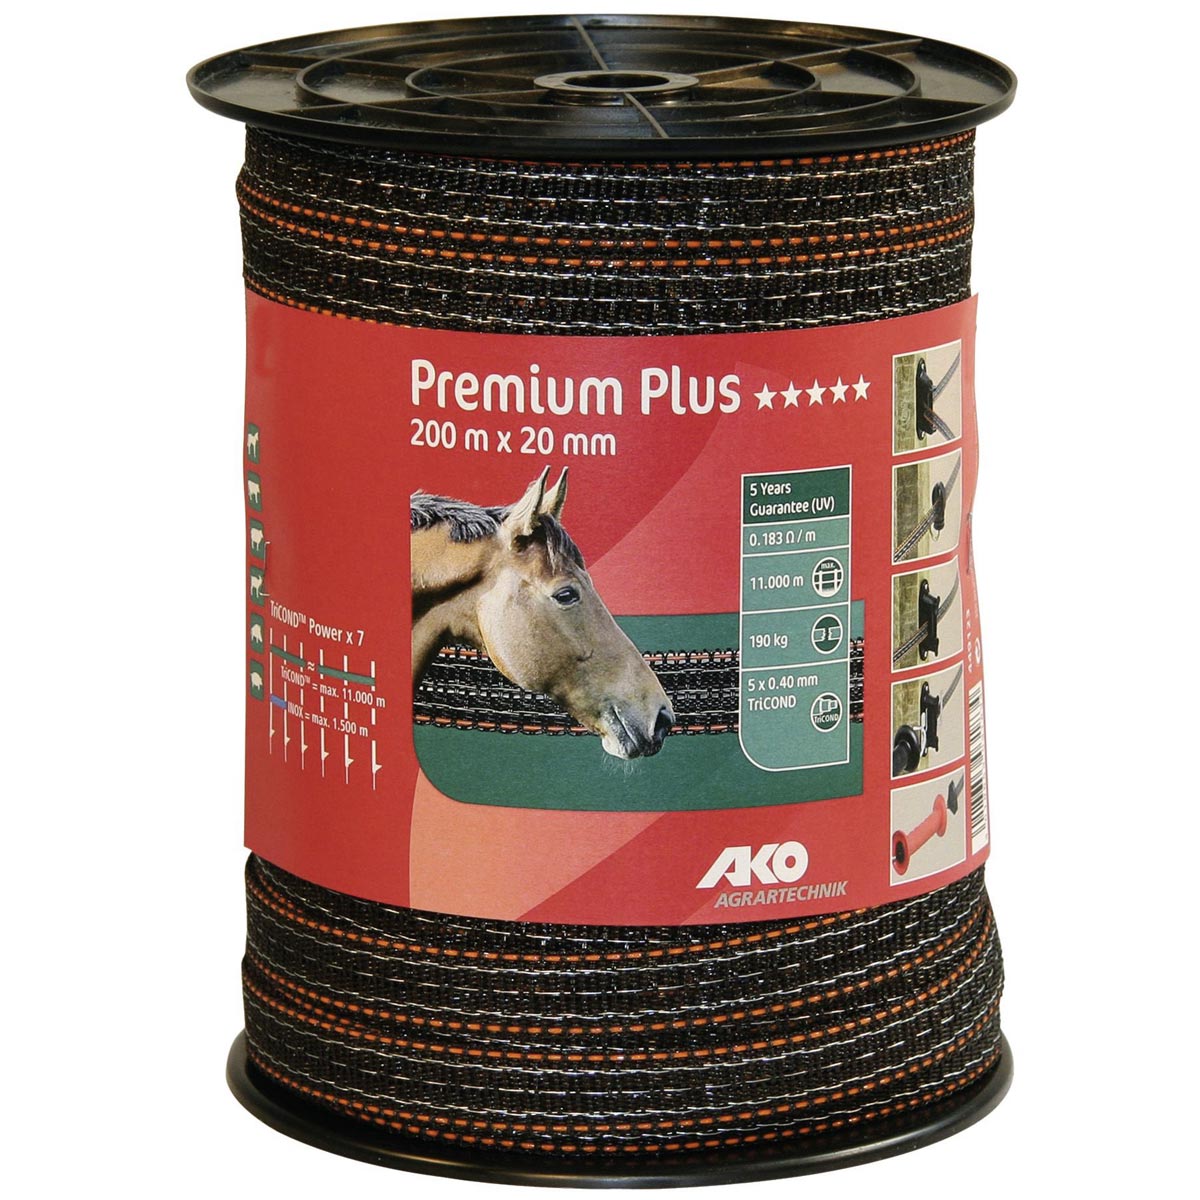 Ako Pasture Fence Tape Premium Plus 200m, 0.40 TriCOND, brown-orange 200 m x 20 mm